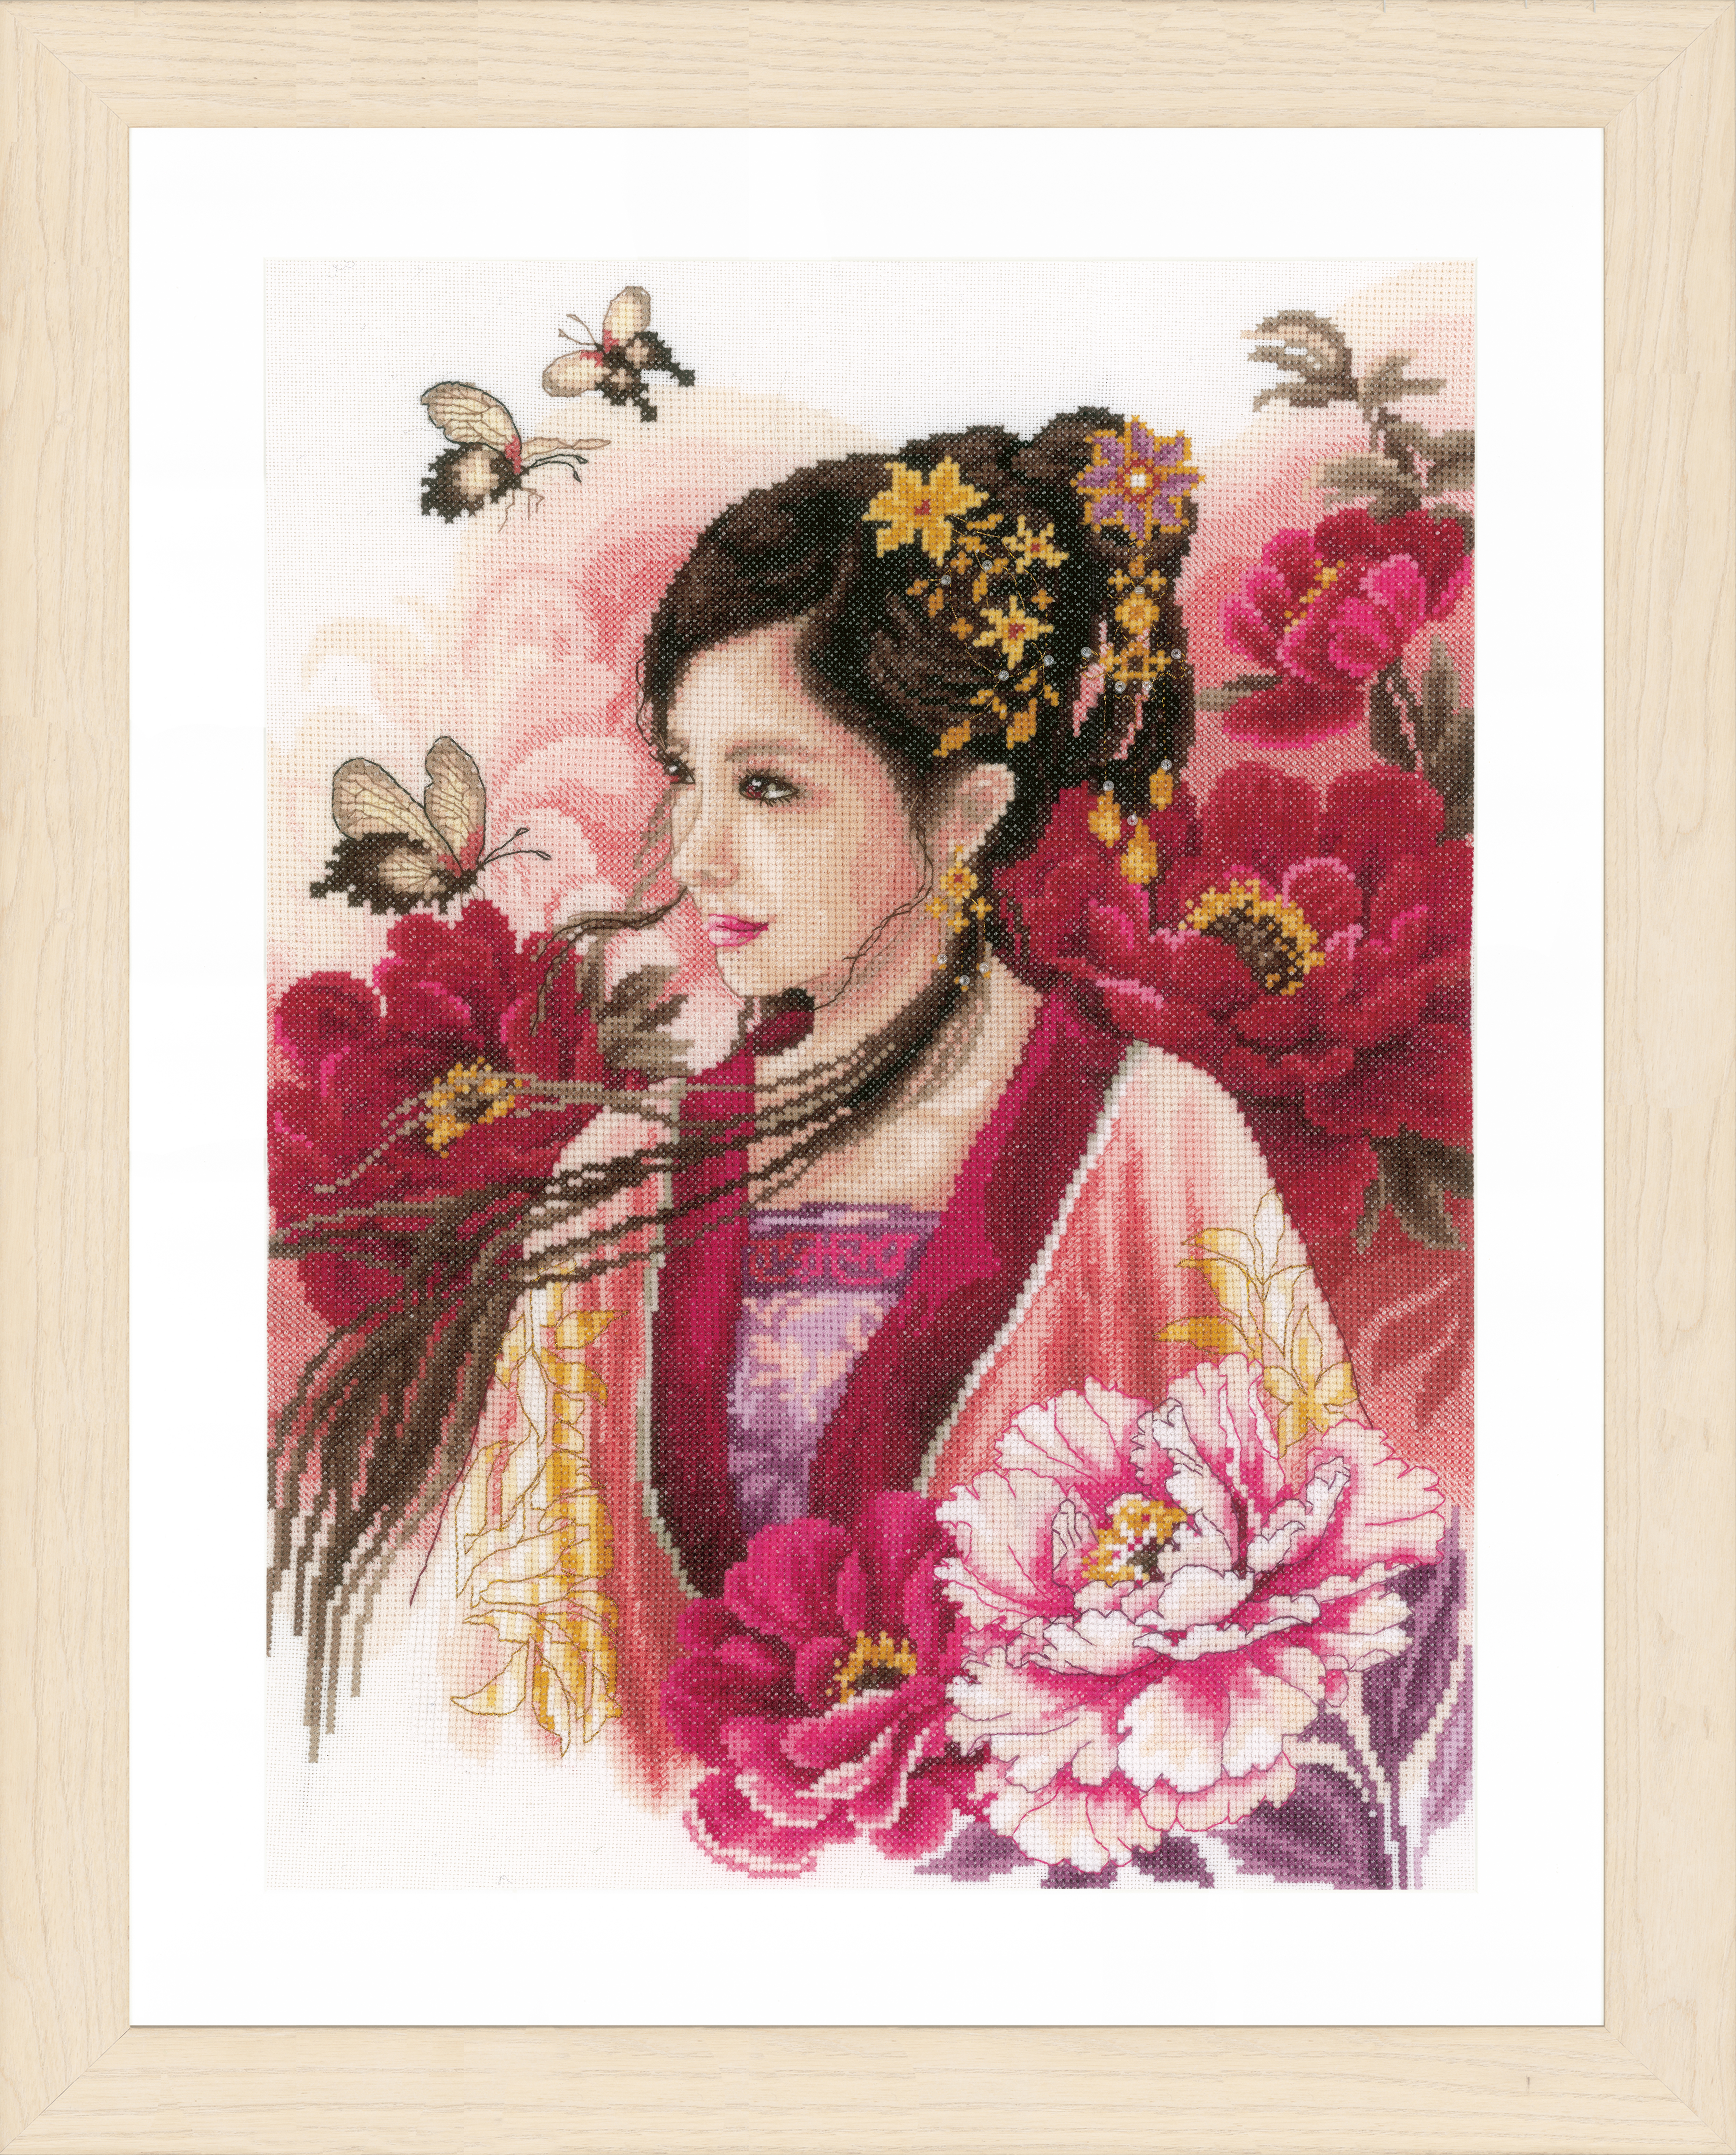 Kit point de croix compté Lanarte : femme asiatique en rose (evenweave) - Photo 1 sur 1